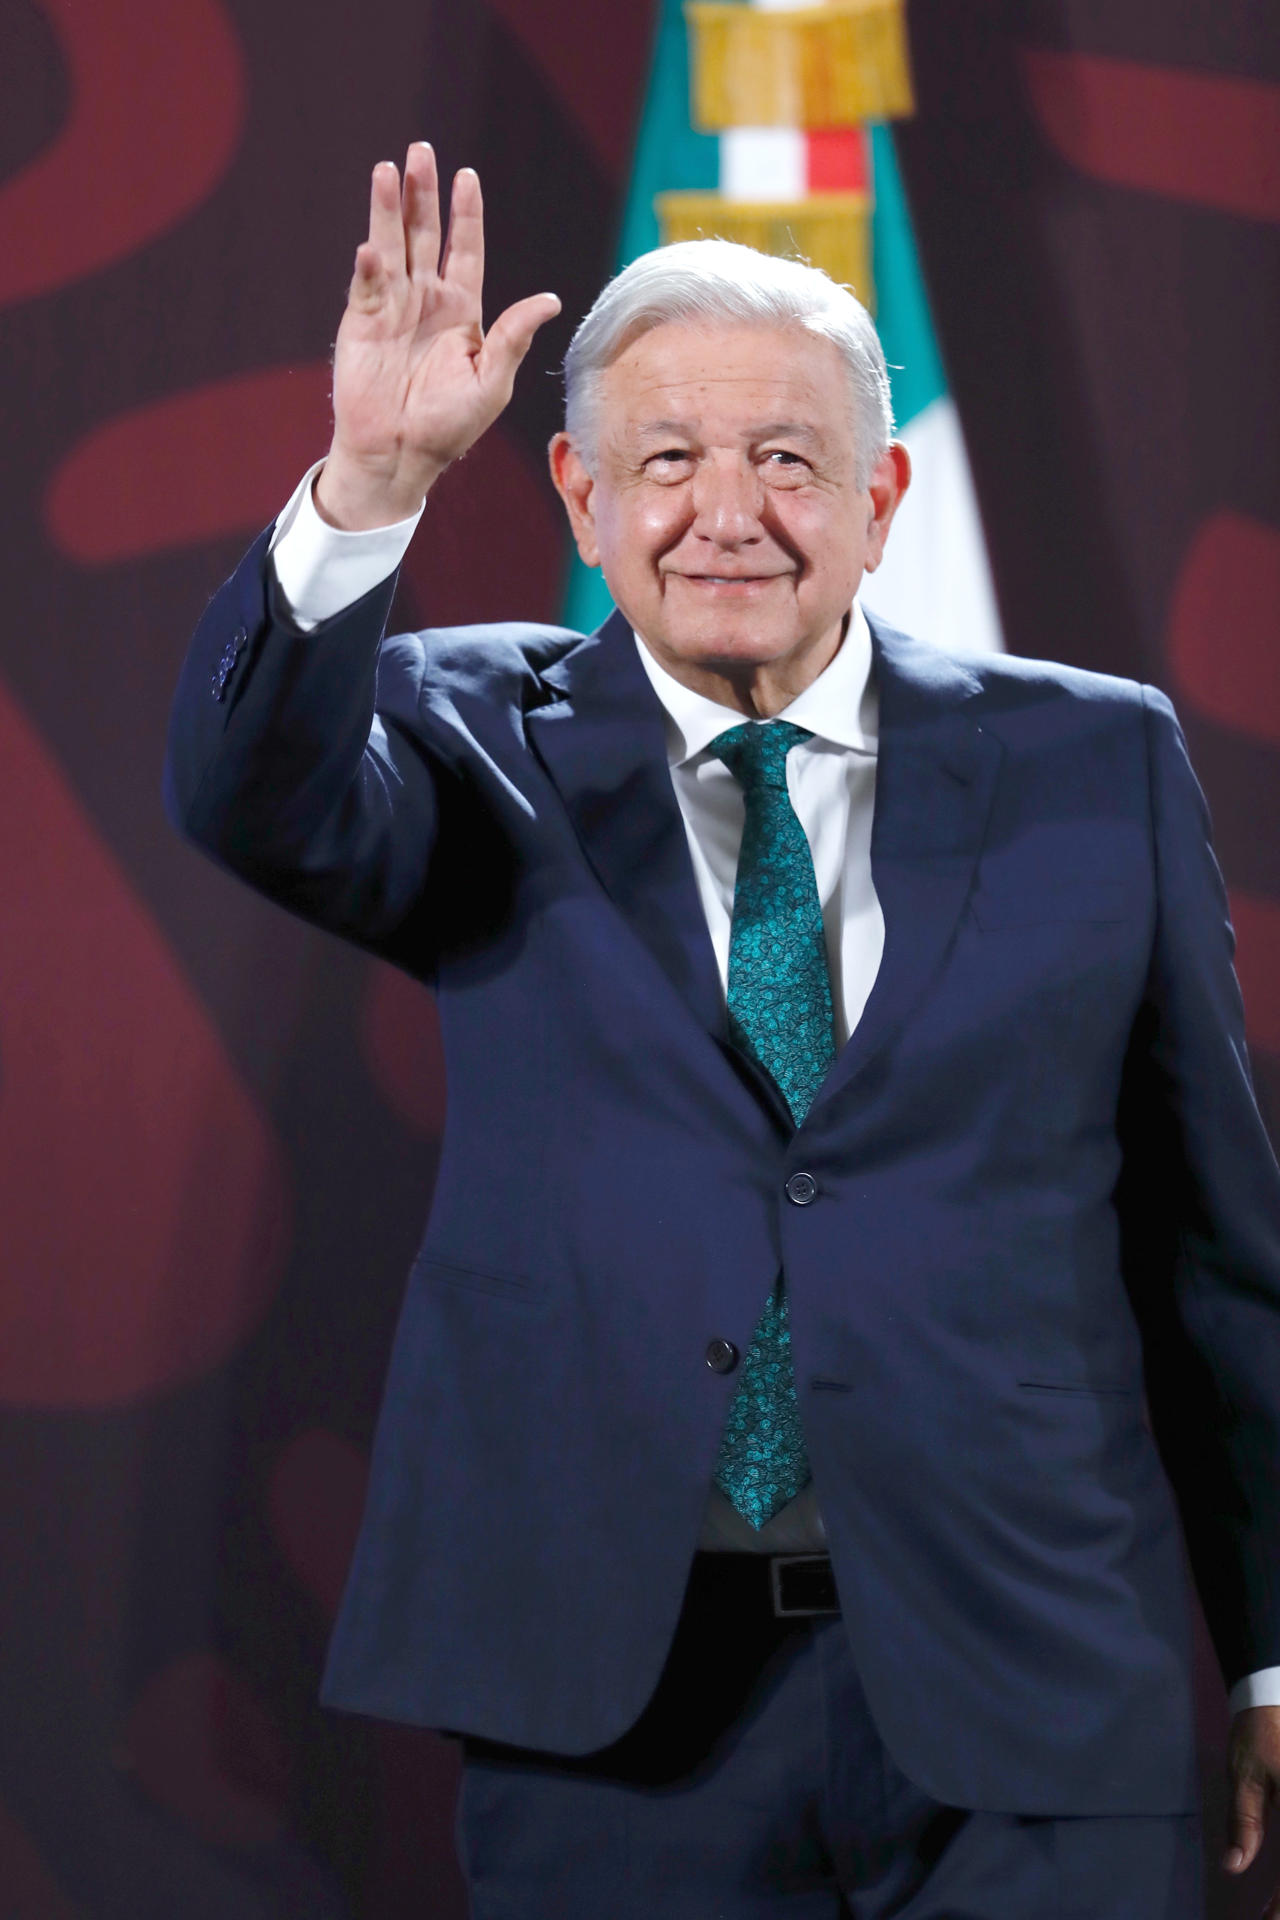 El Presidente de México Andrés Manuel López Obrador, participa este miércoles durante una rueda de prensa matutina en Palacio Nacional en la Ciudad de México (México). EFE/Sáshenka Gutiérrez
